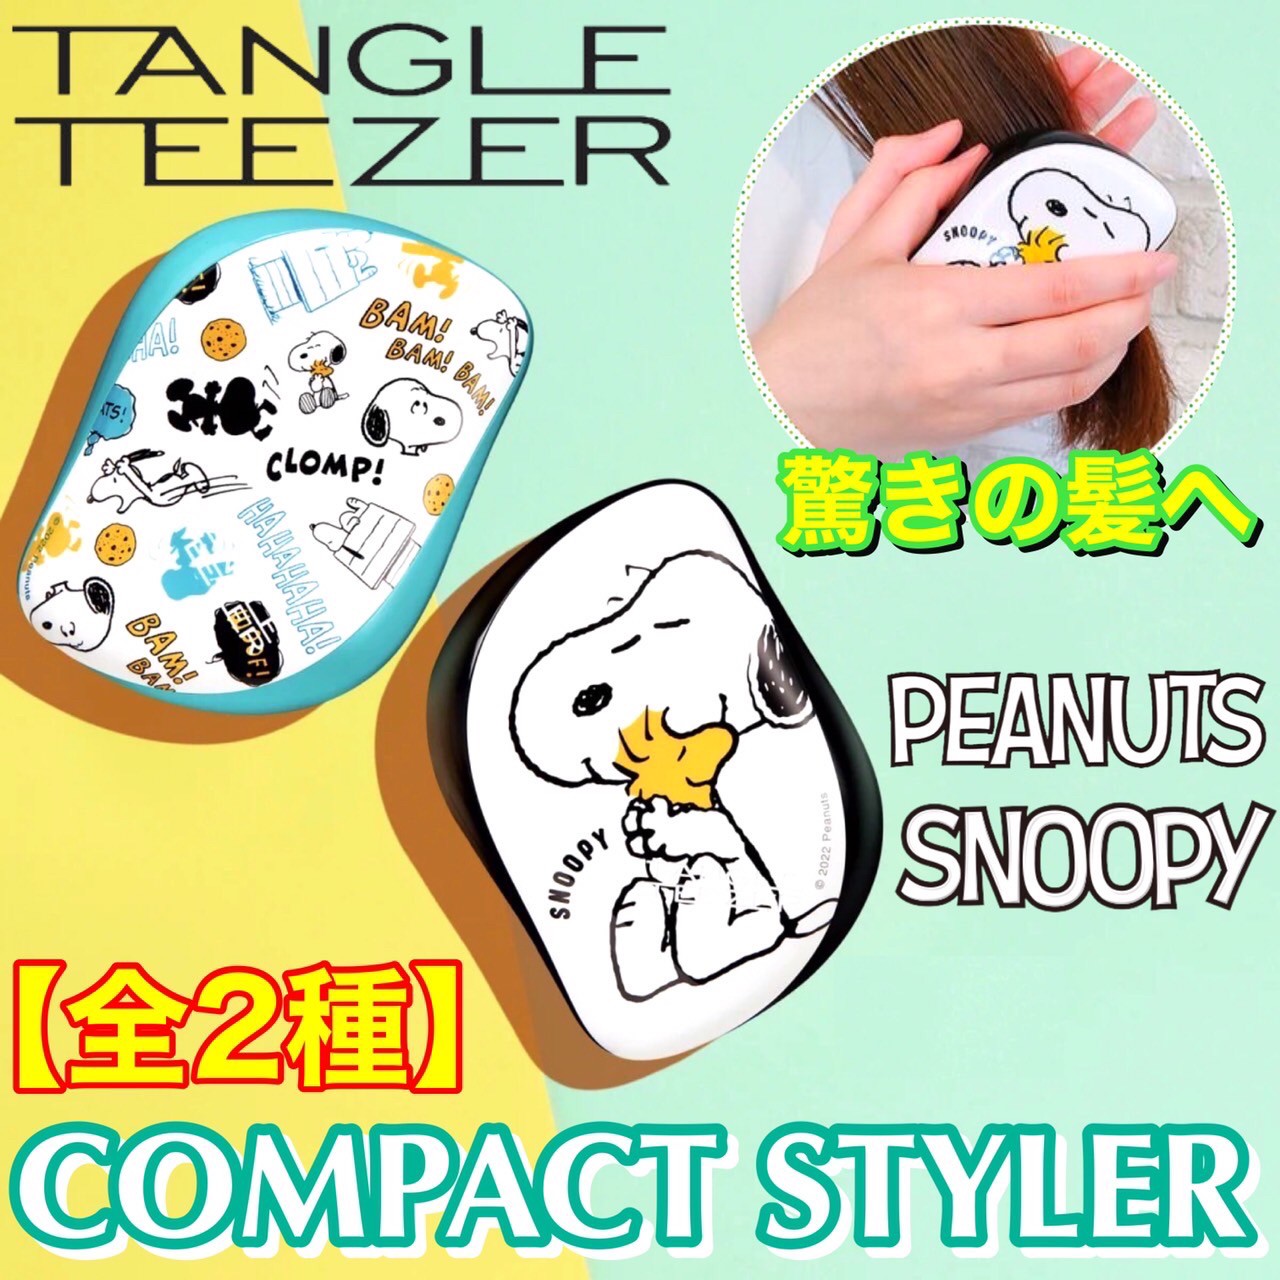 TANGLE TEEZER(タングルティーザー) ヘアブラシ CompactStyler(コンパクトスタイラー) スヌーピー ピーナッツ 全2種   PEANUT Snoopy キャラクター